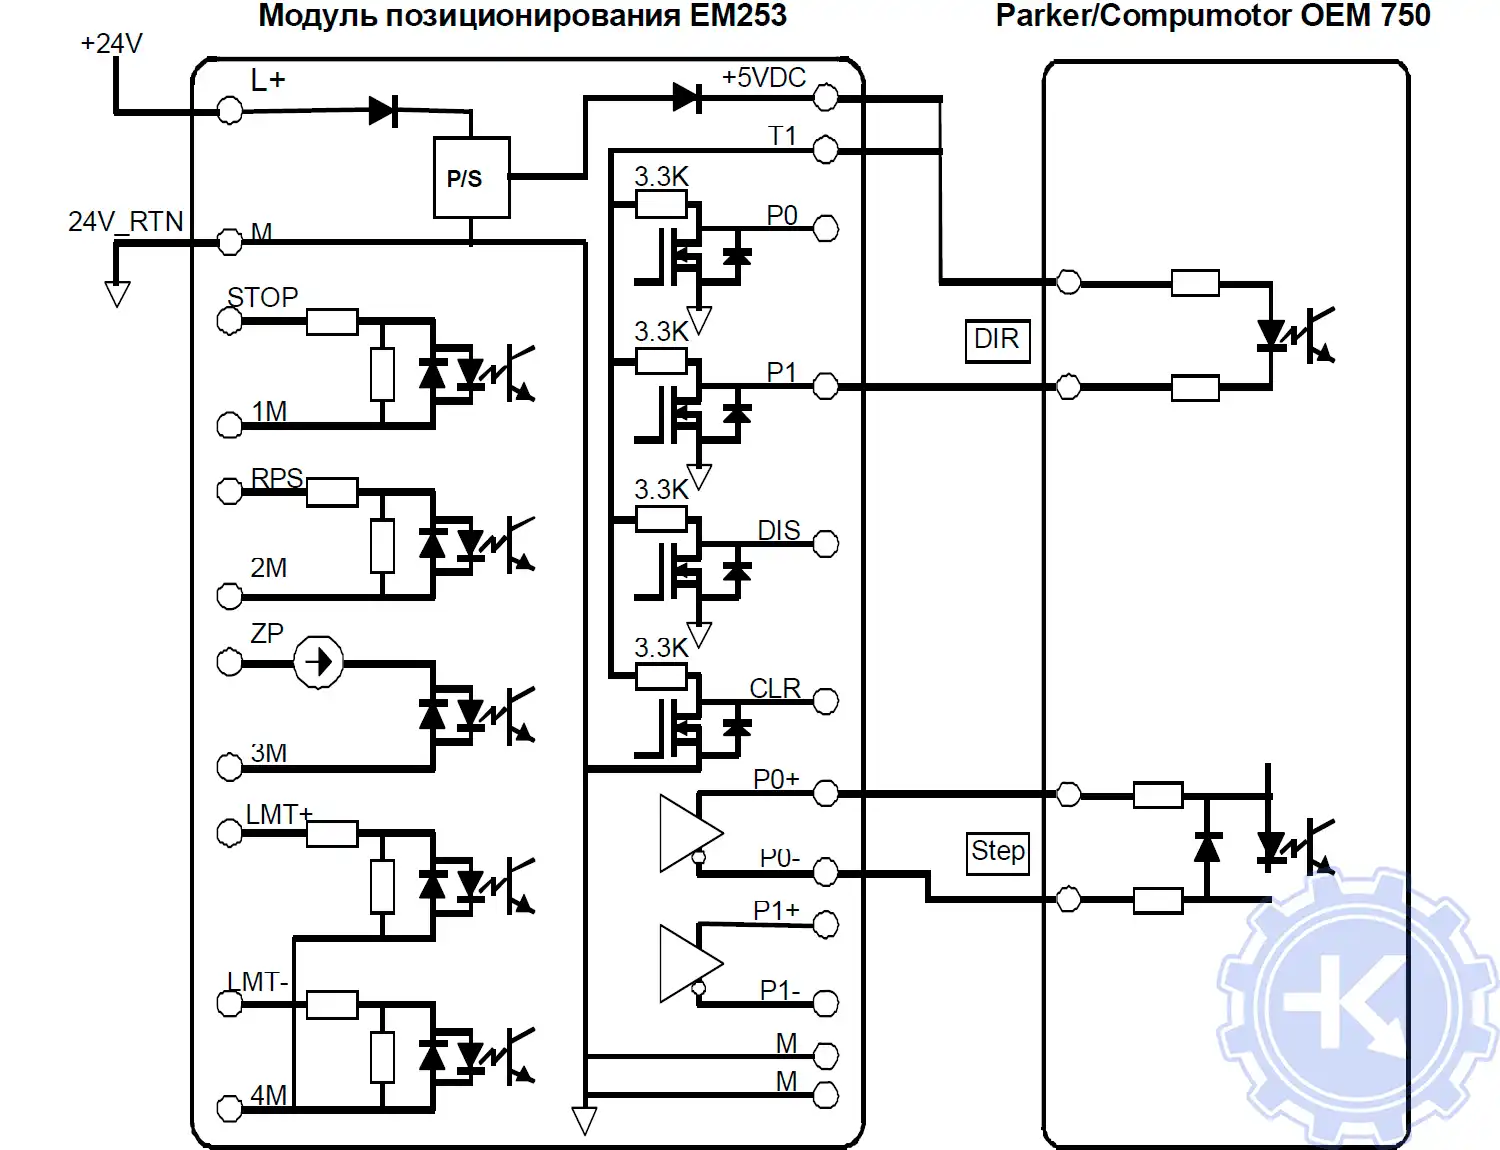 Схема подключения модуля позиционирования EM 253 к Parker/Compumotor OEM 750